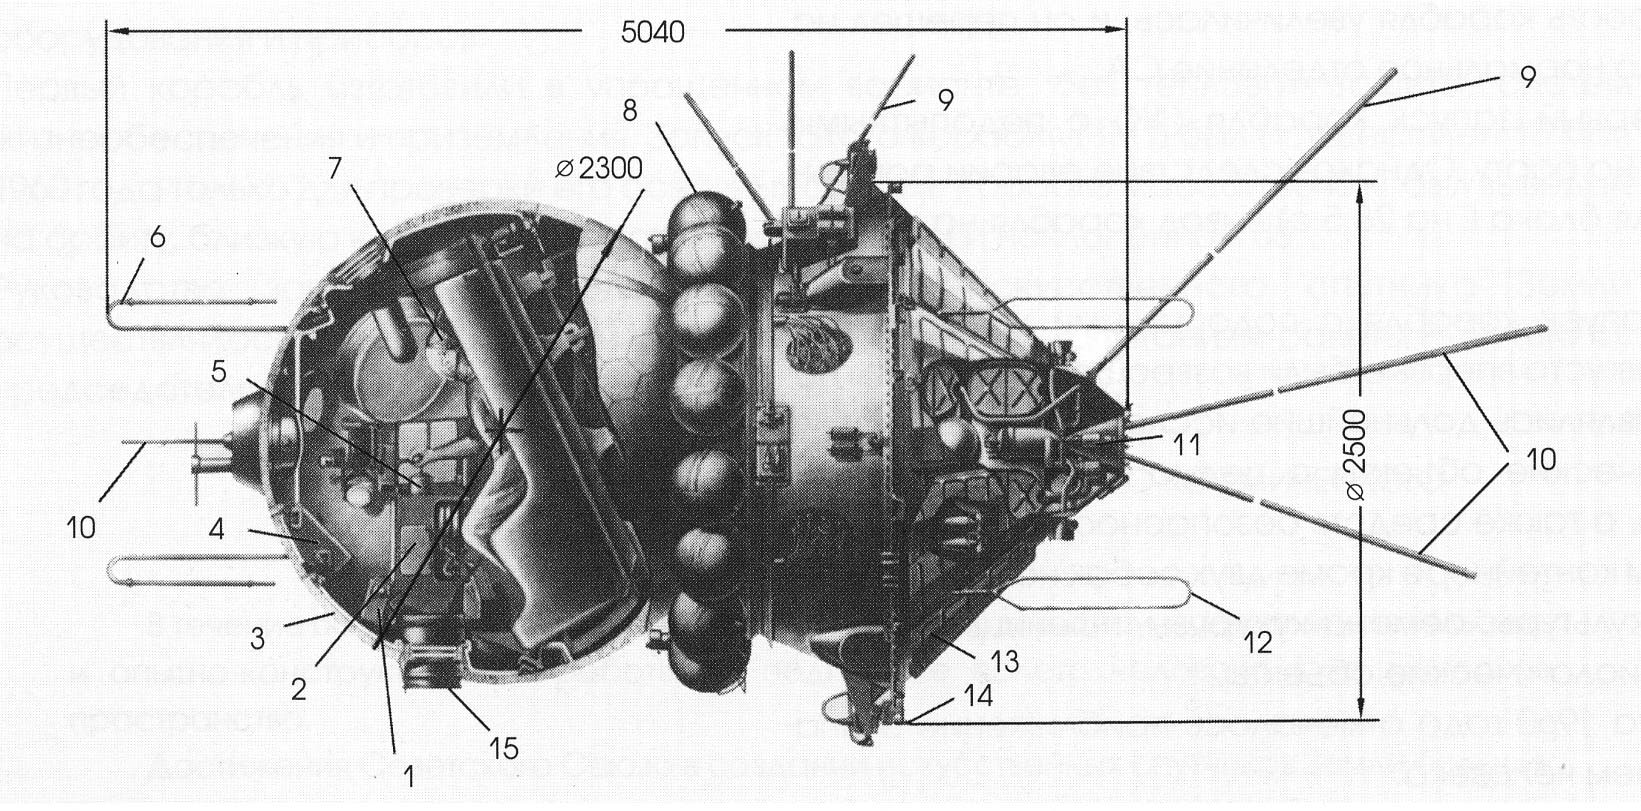 Voskhod Spacecraft